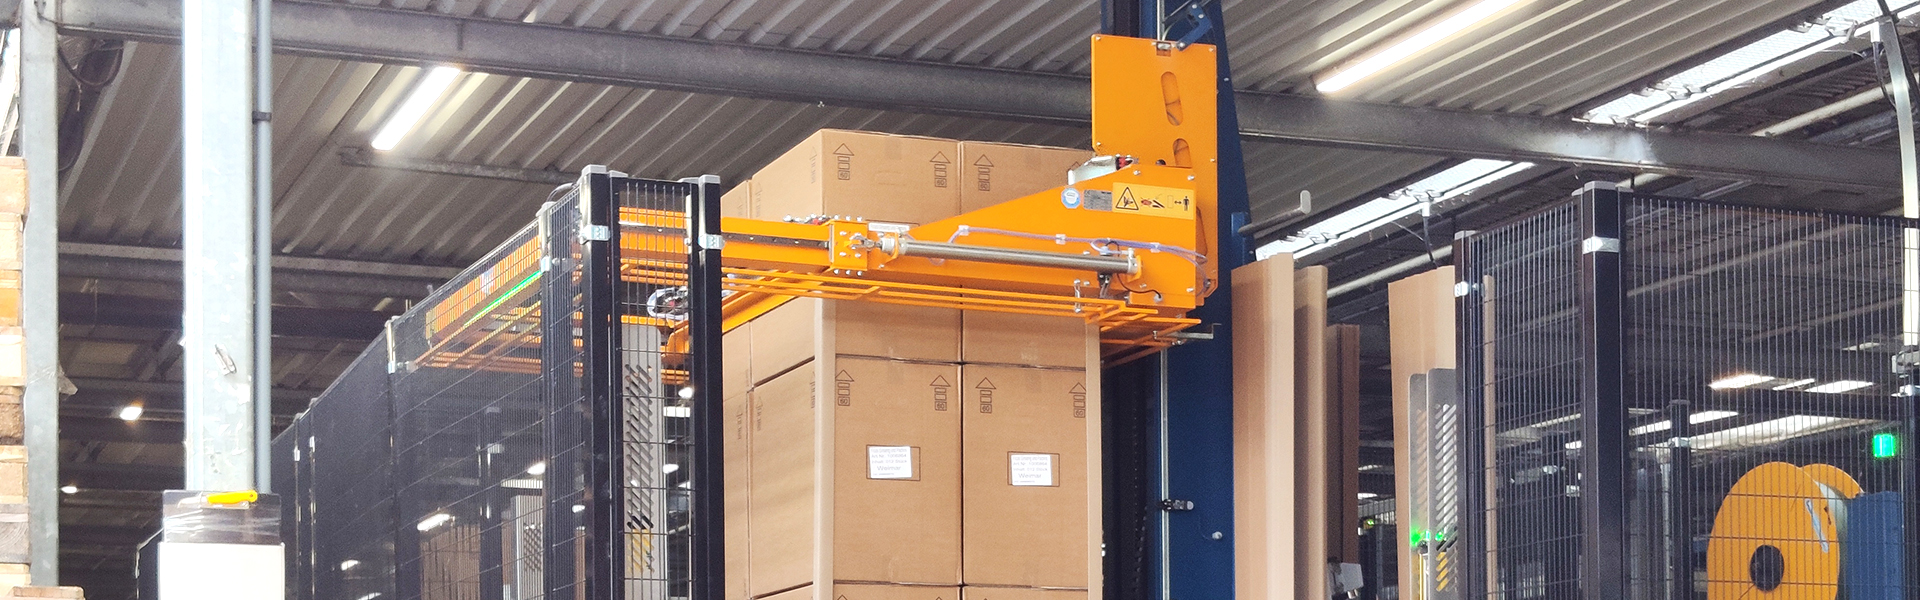 Steenks Service verkauft die erste vollautomatische Umreifungsmaschine im Pflanzenbereich | Steenks Service